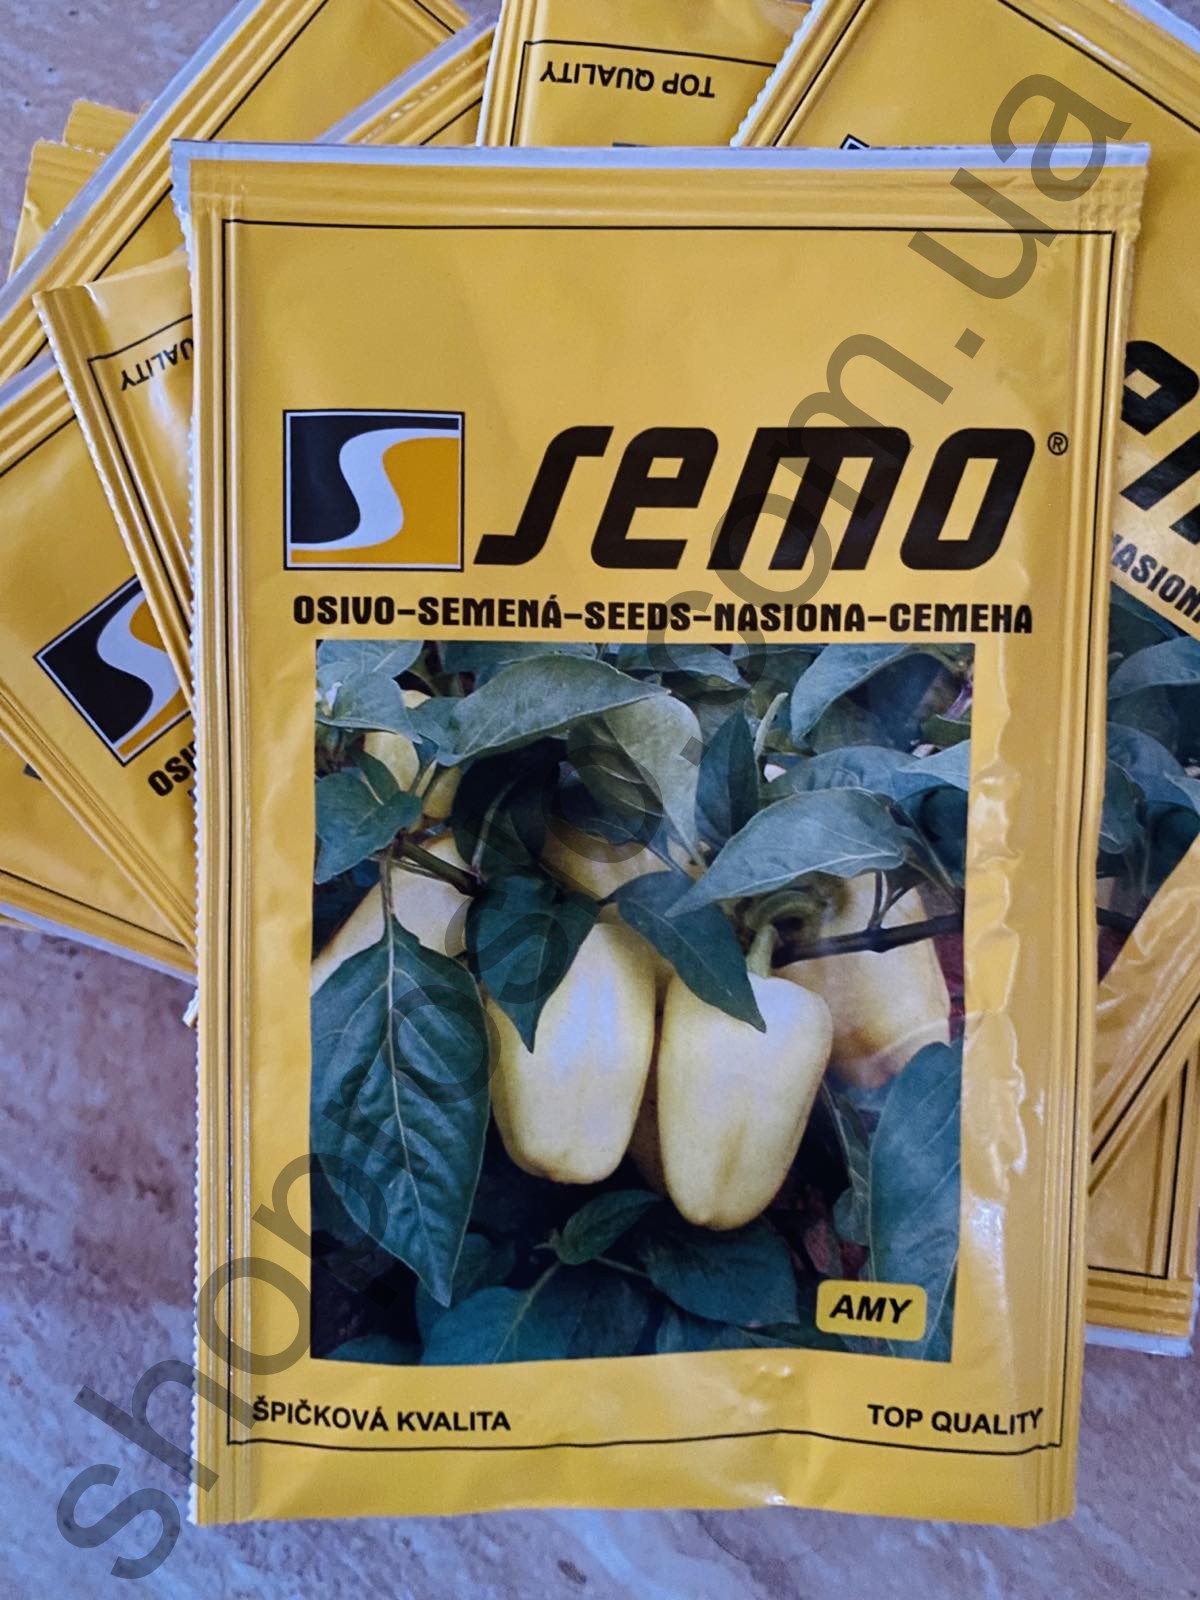 Семена перца Ами F1, ранний сорт, конический, "Semo" (Чехия), 1 000 шт